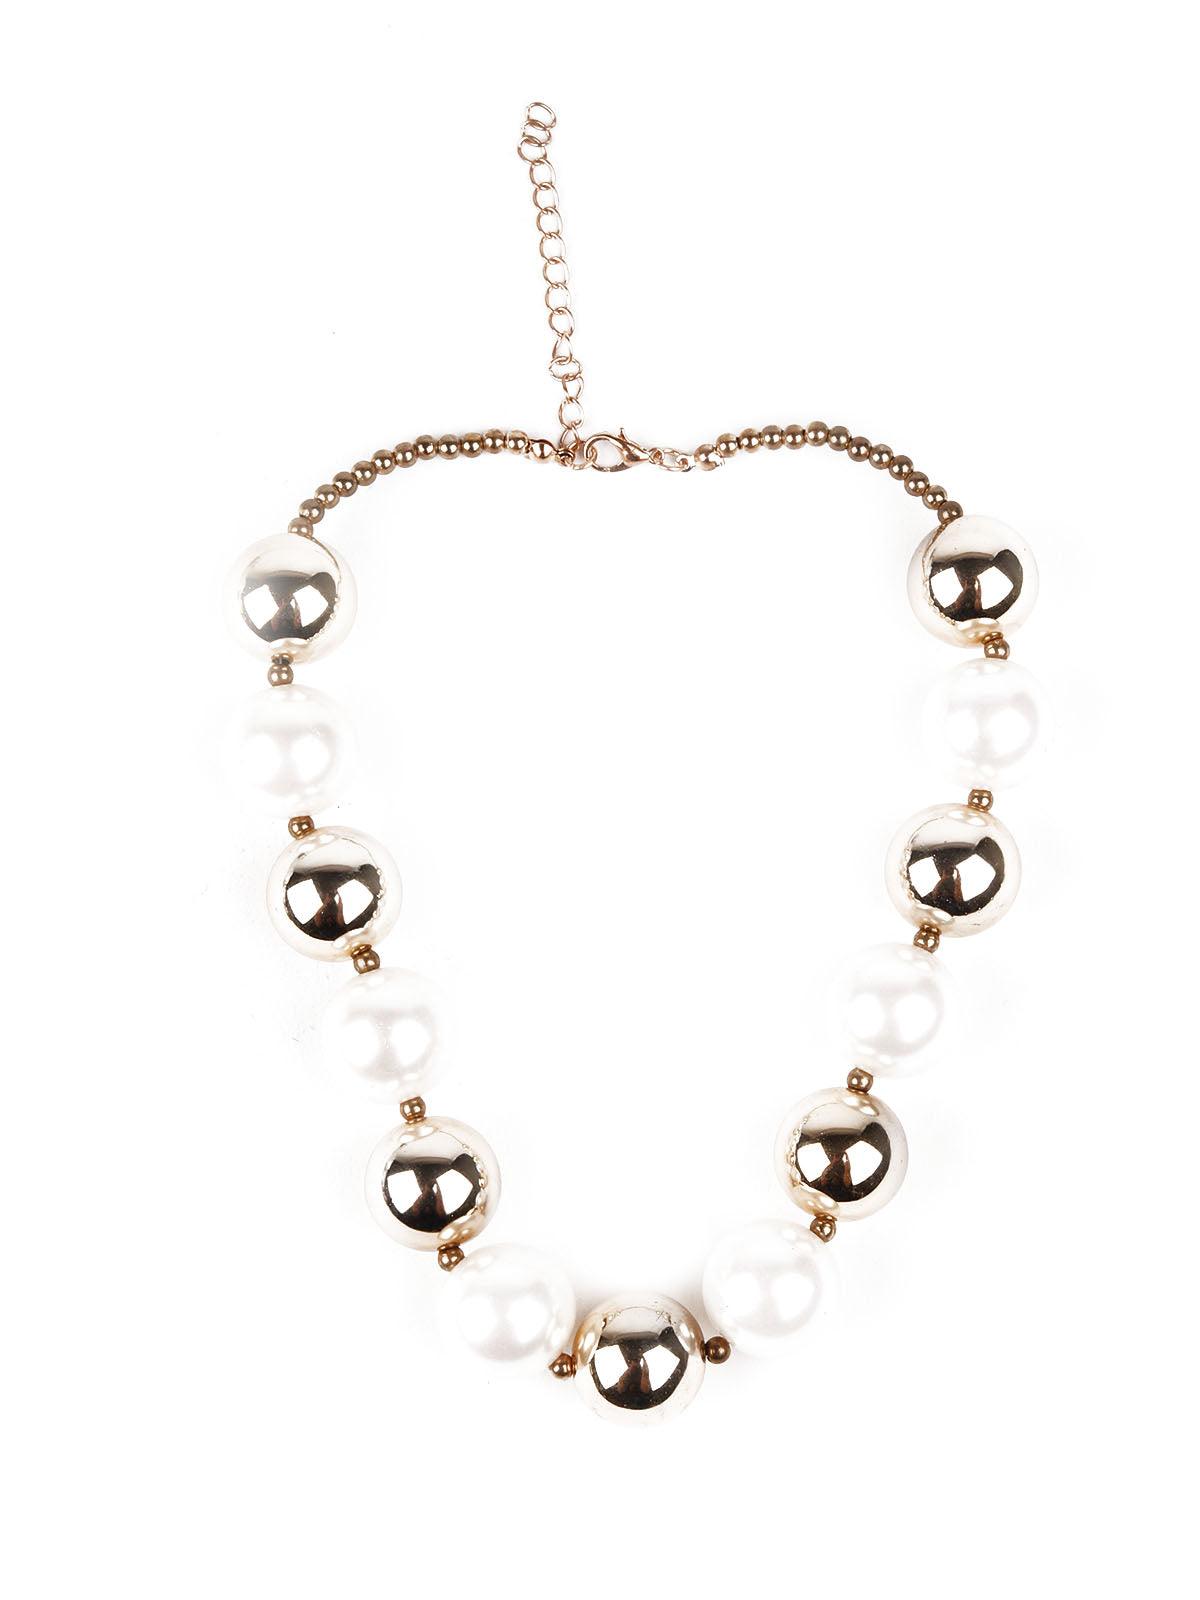 Women's Stylish Faux Pearls Choker Neckpiece - Odette